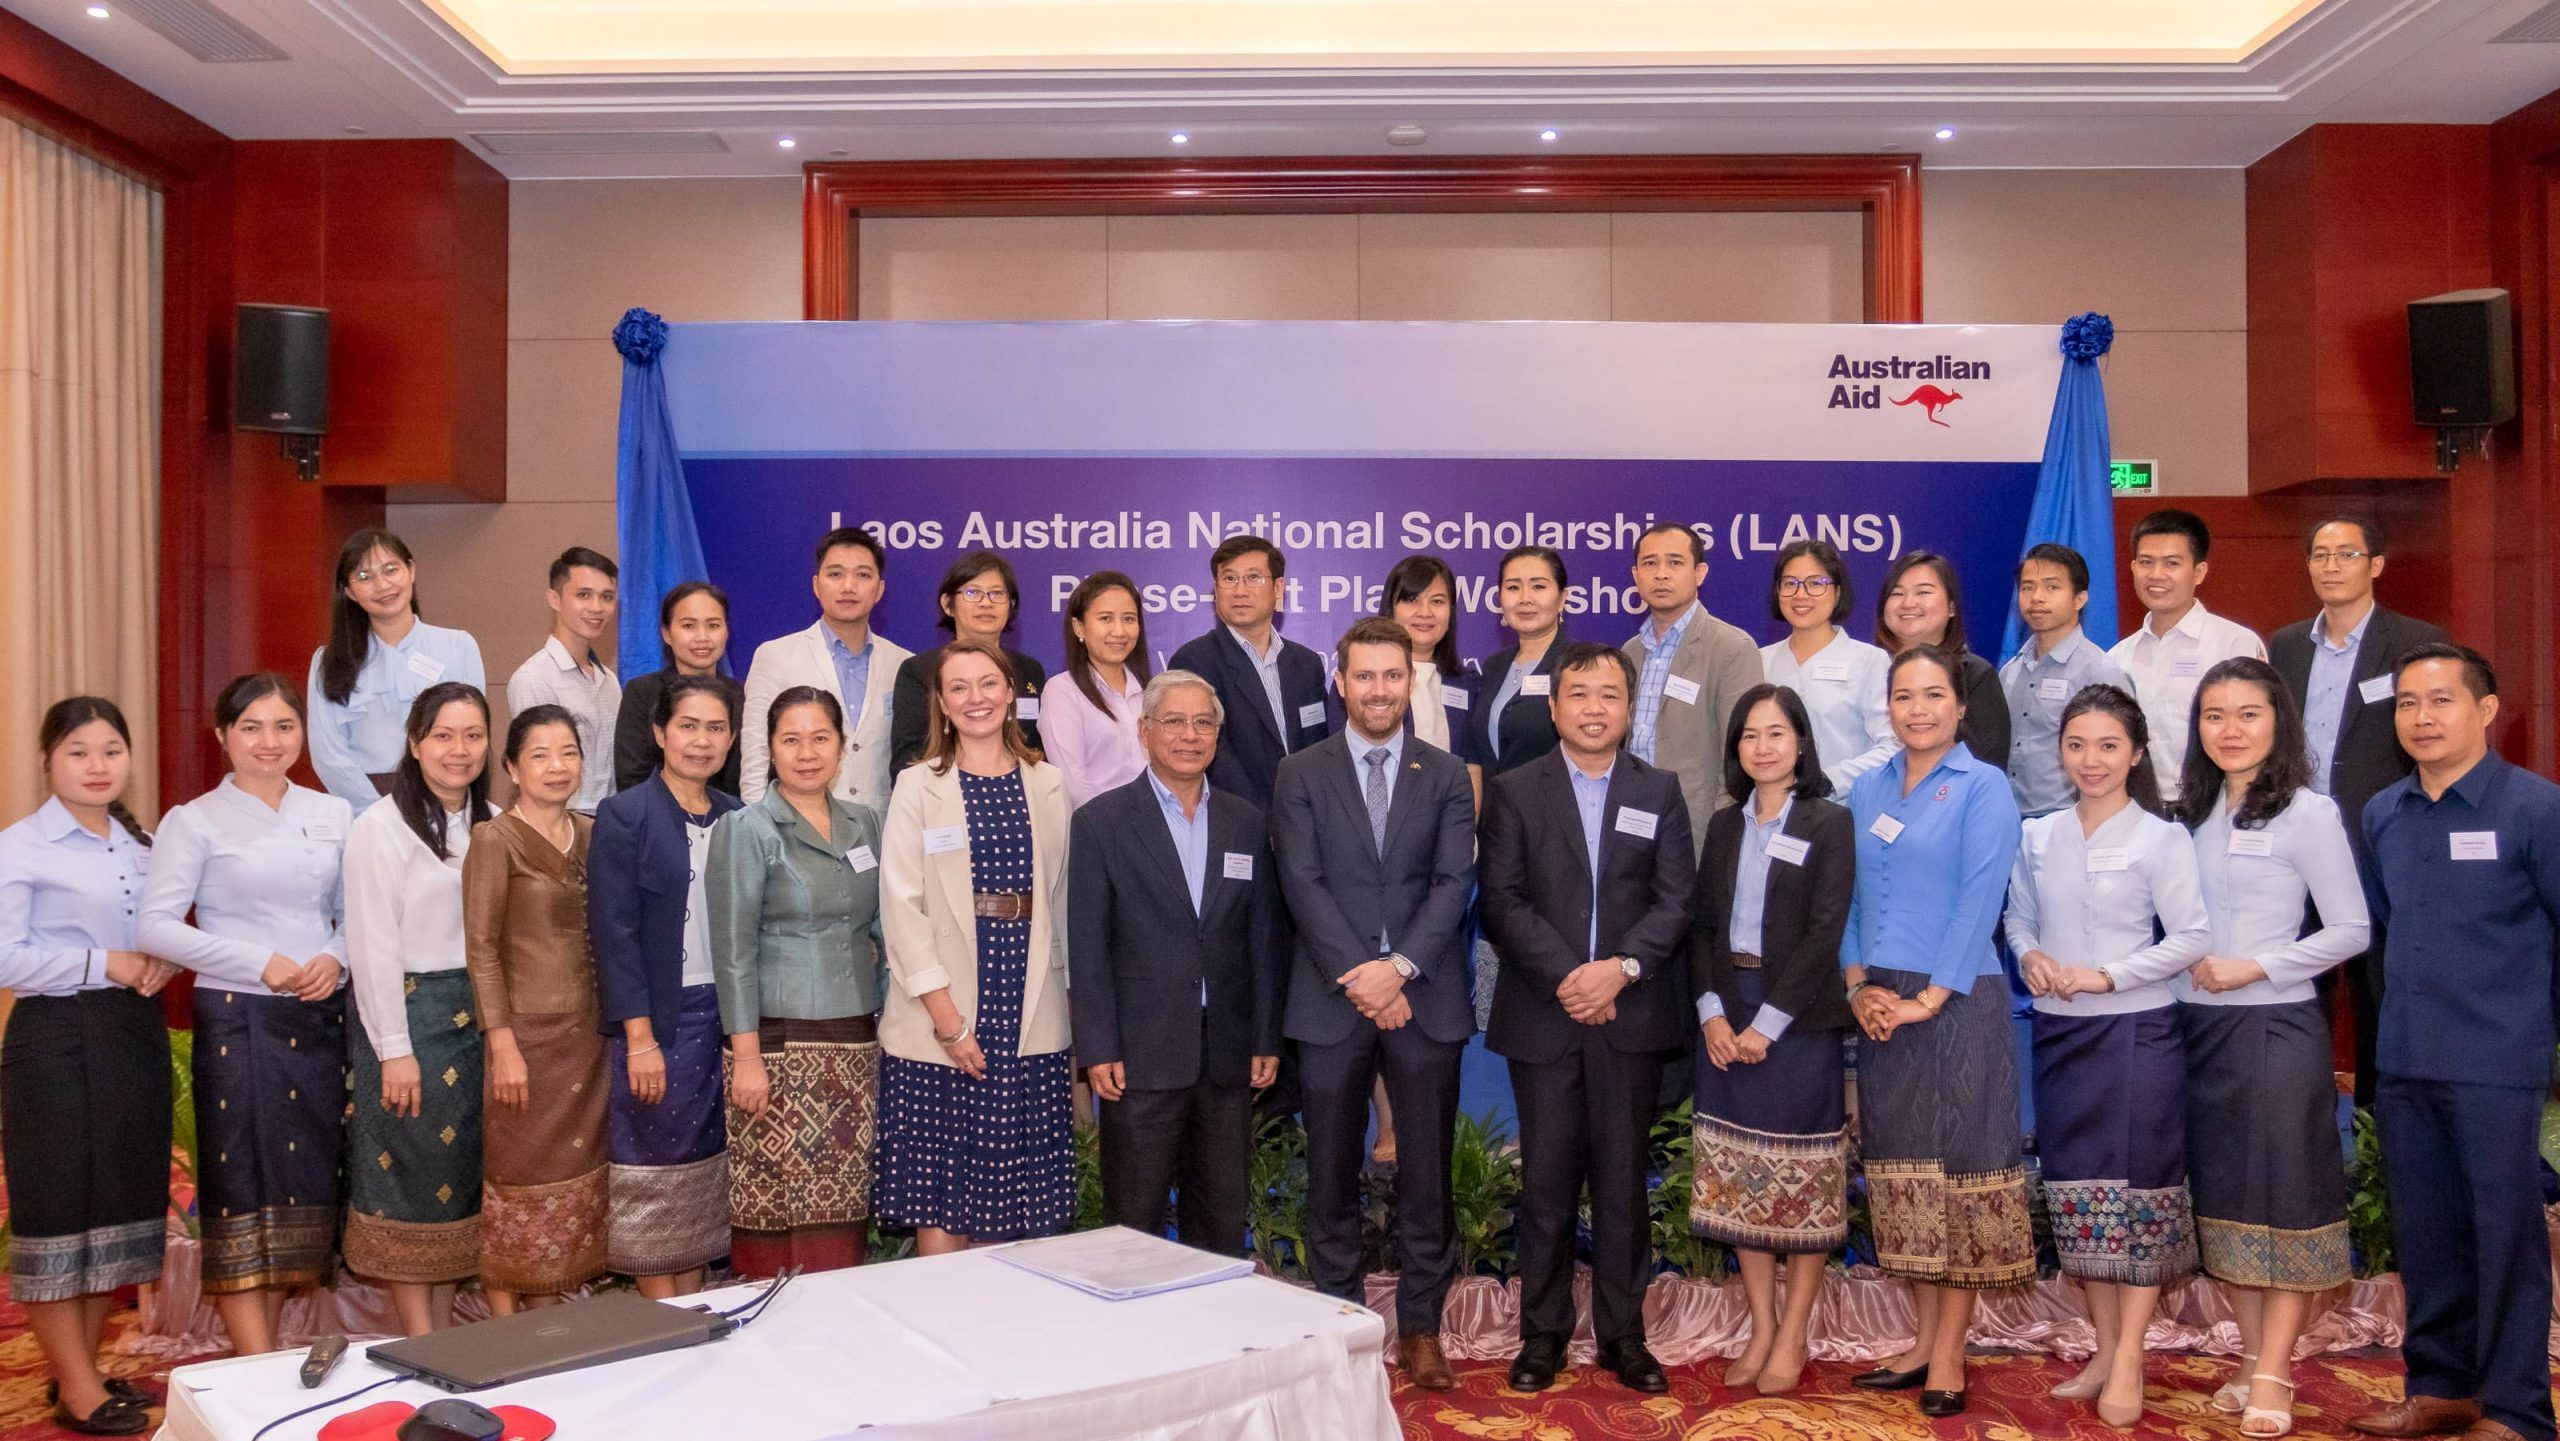 Laos Australia National Scholarships (LANS) Planning Workshop celebrates achievements